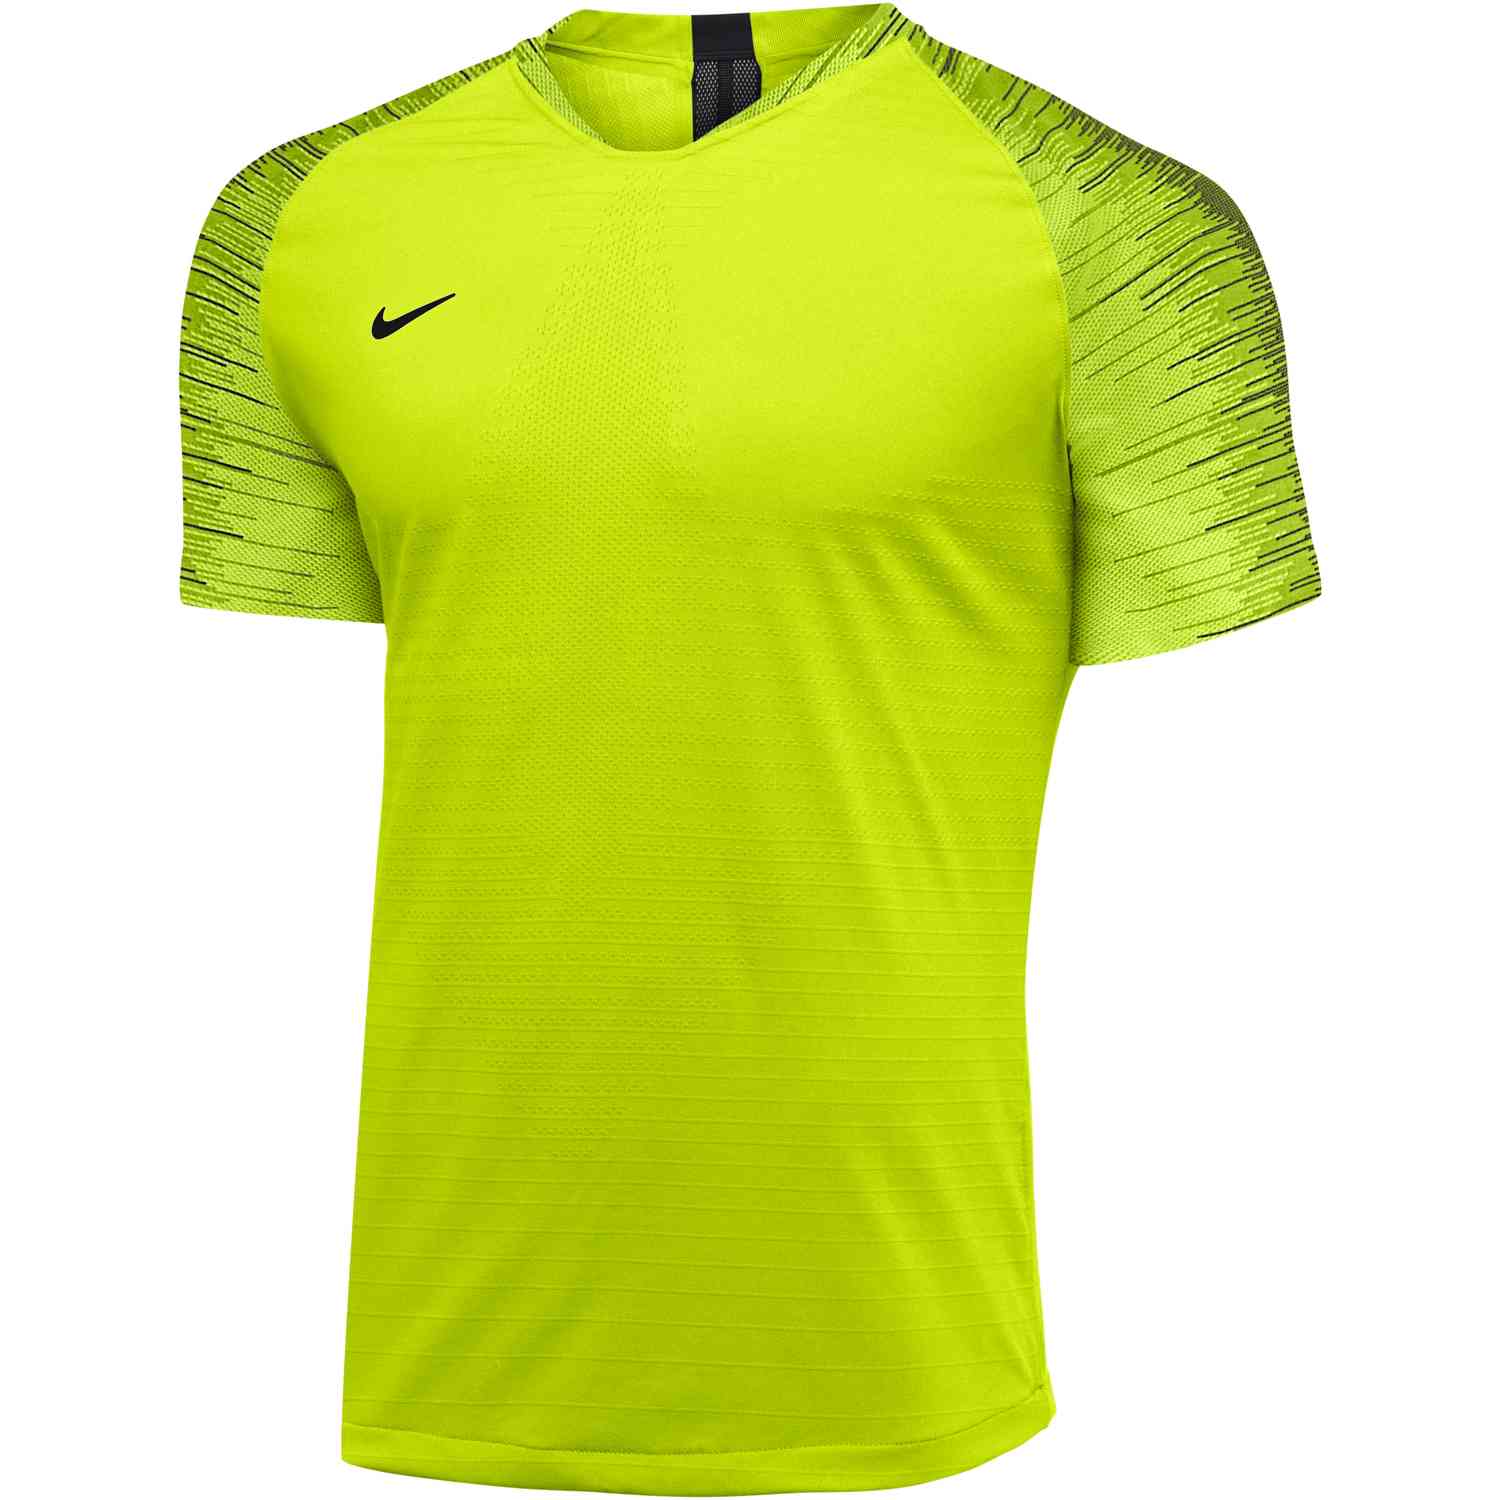 Nike Vaporknit II Jersey - Volt - SoccerPro